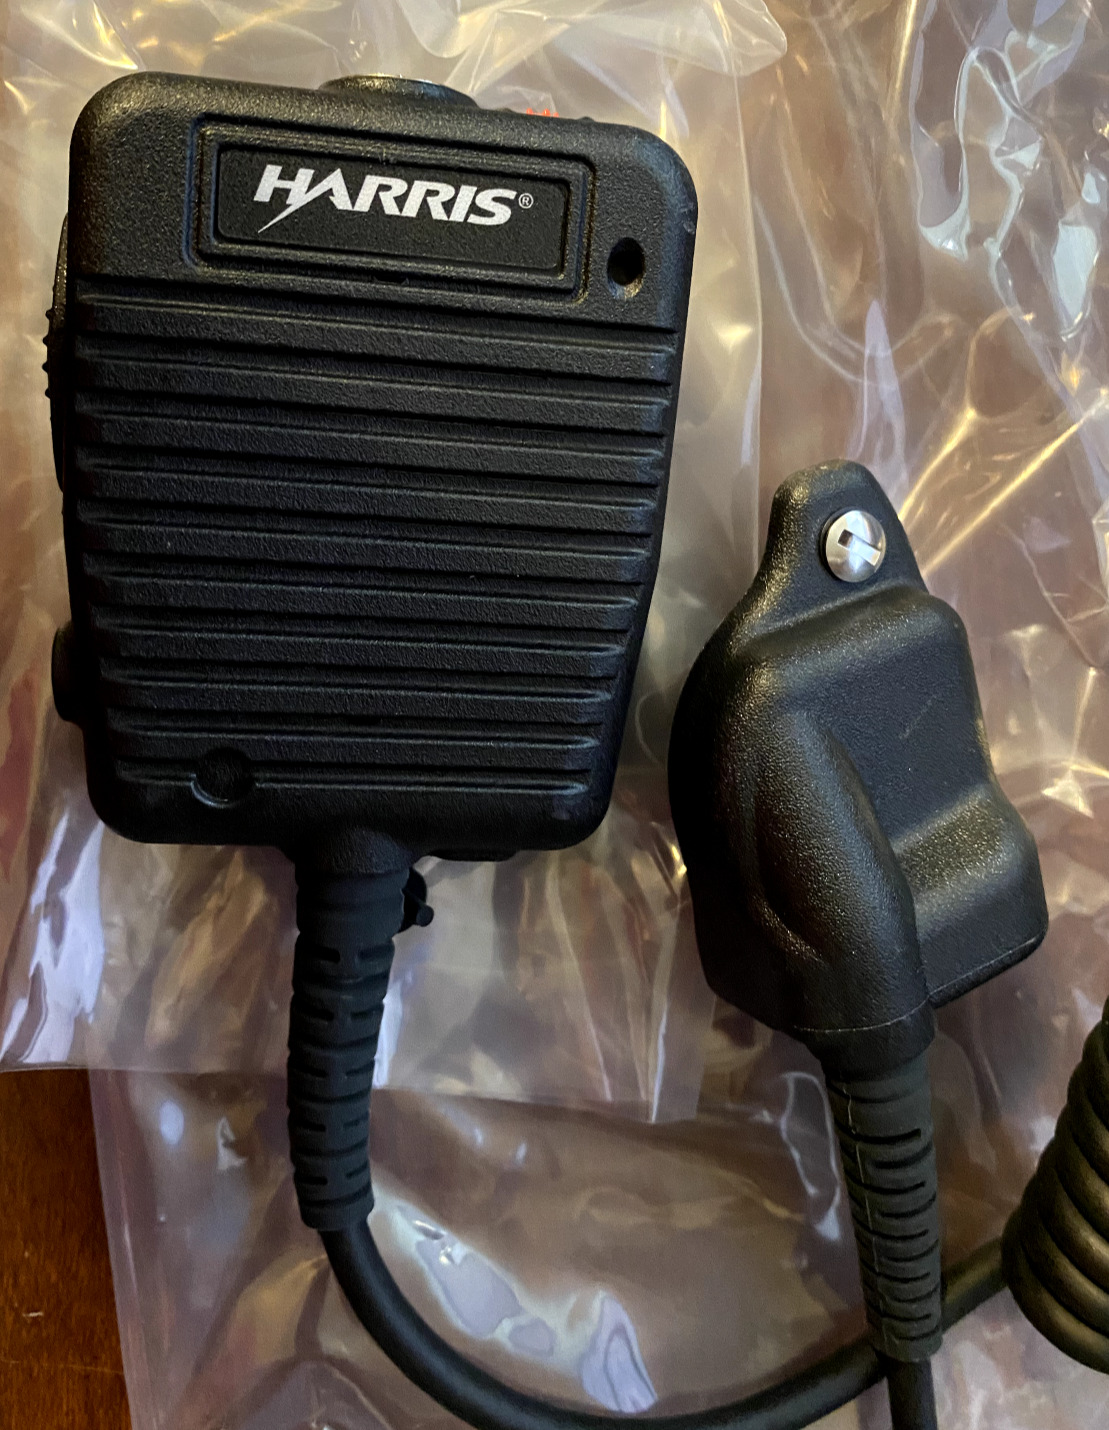 NEW in Box - Harris Speaker Microphone M/A-COM P5300/P5400/P5500/P7300 XG-75